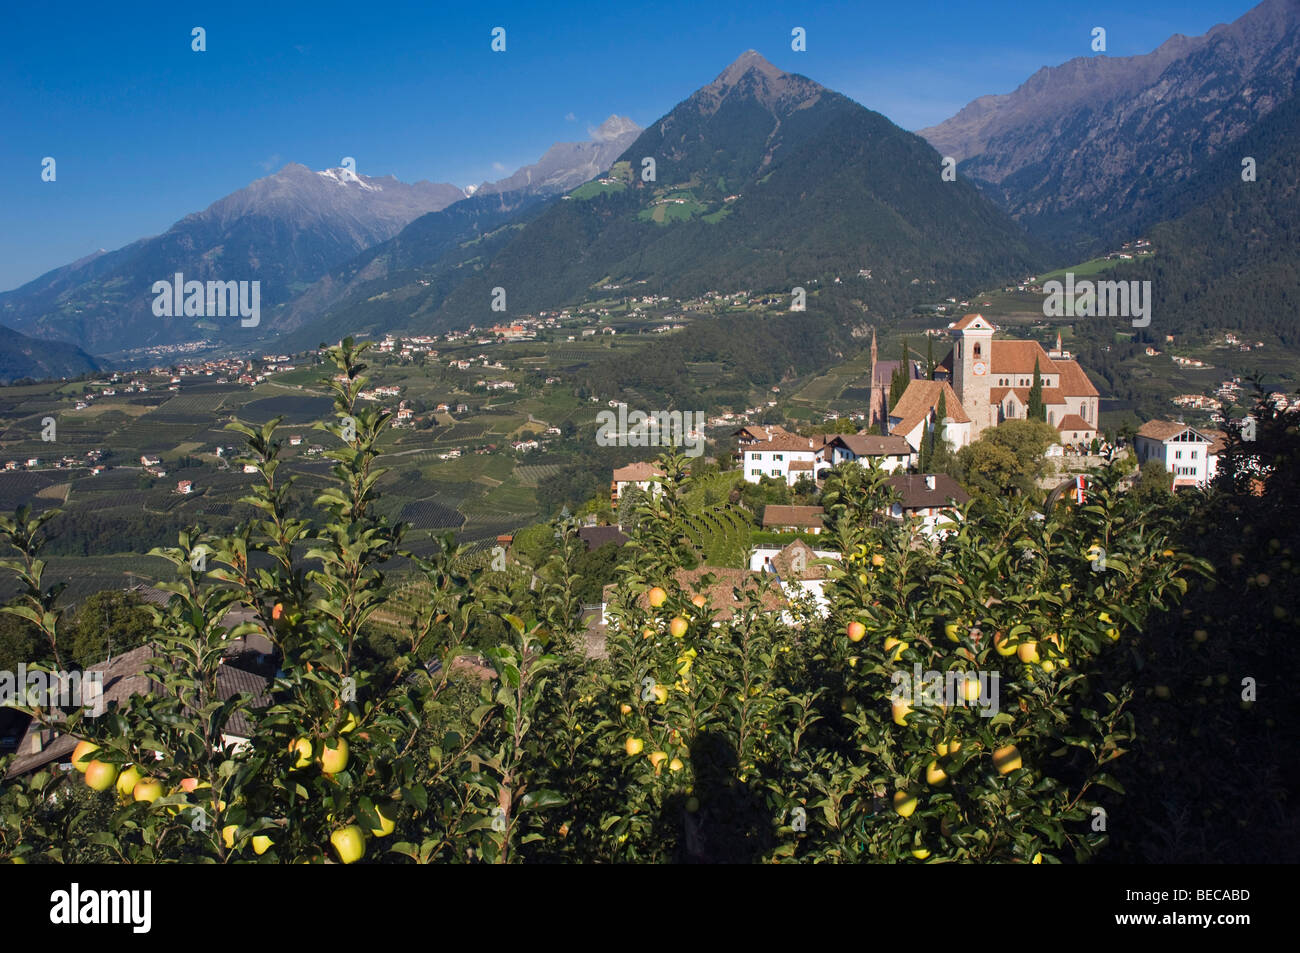 Village de montagne, apple plantation, Schenna ou Scena près de Merano, Trentin, Haut Adige, Italie, Europe Banque D'Images